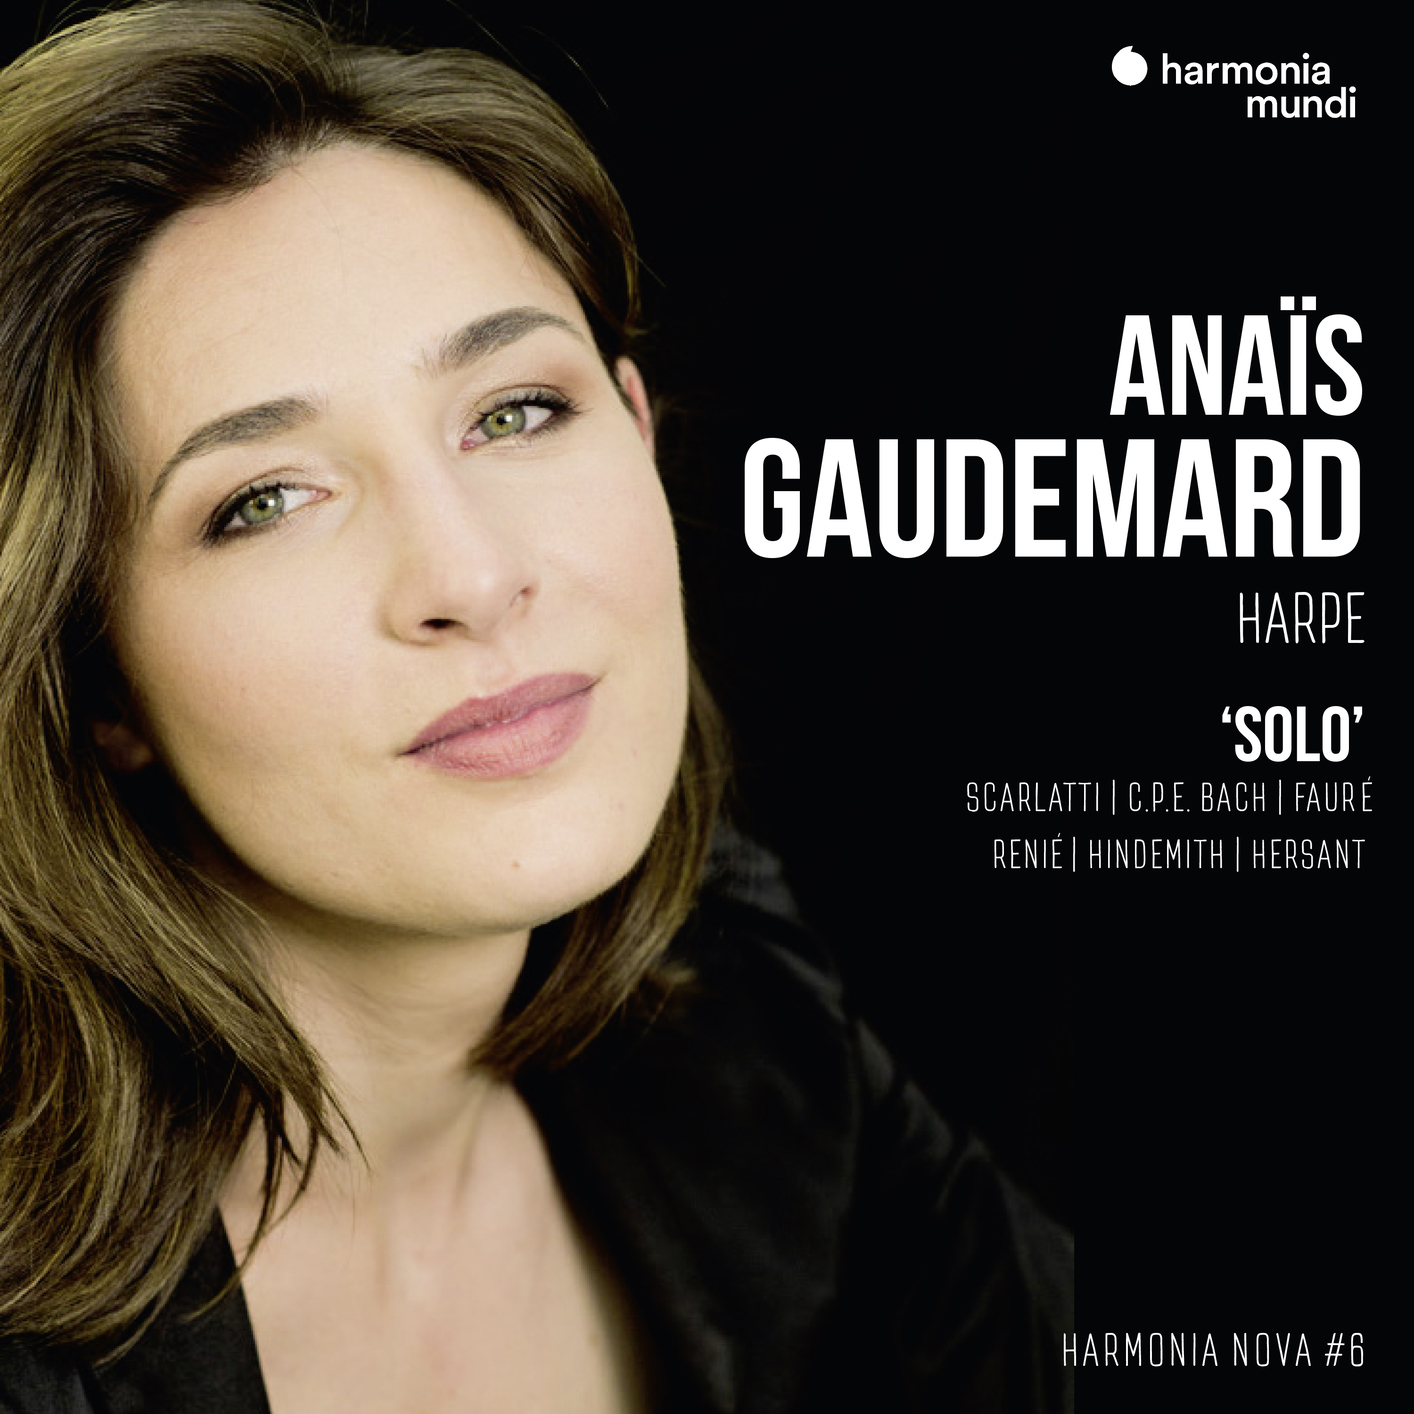 Anais Gaudemard – Anais Gaudemard: Solo – harmonia nova #6 (2019) [FLAC 24bit/88,2kHz]